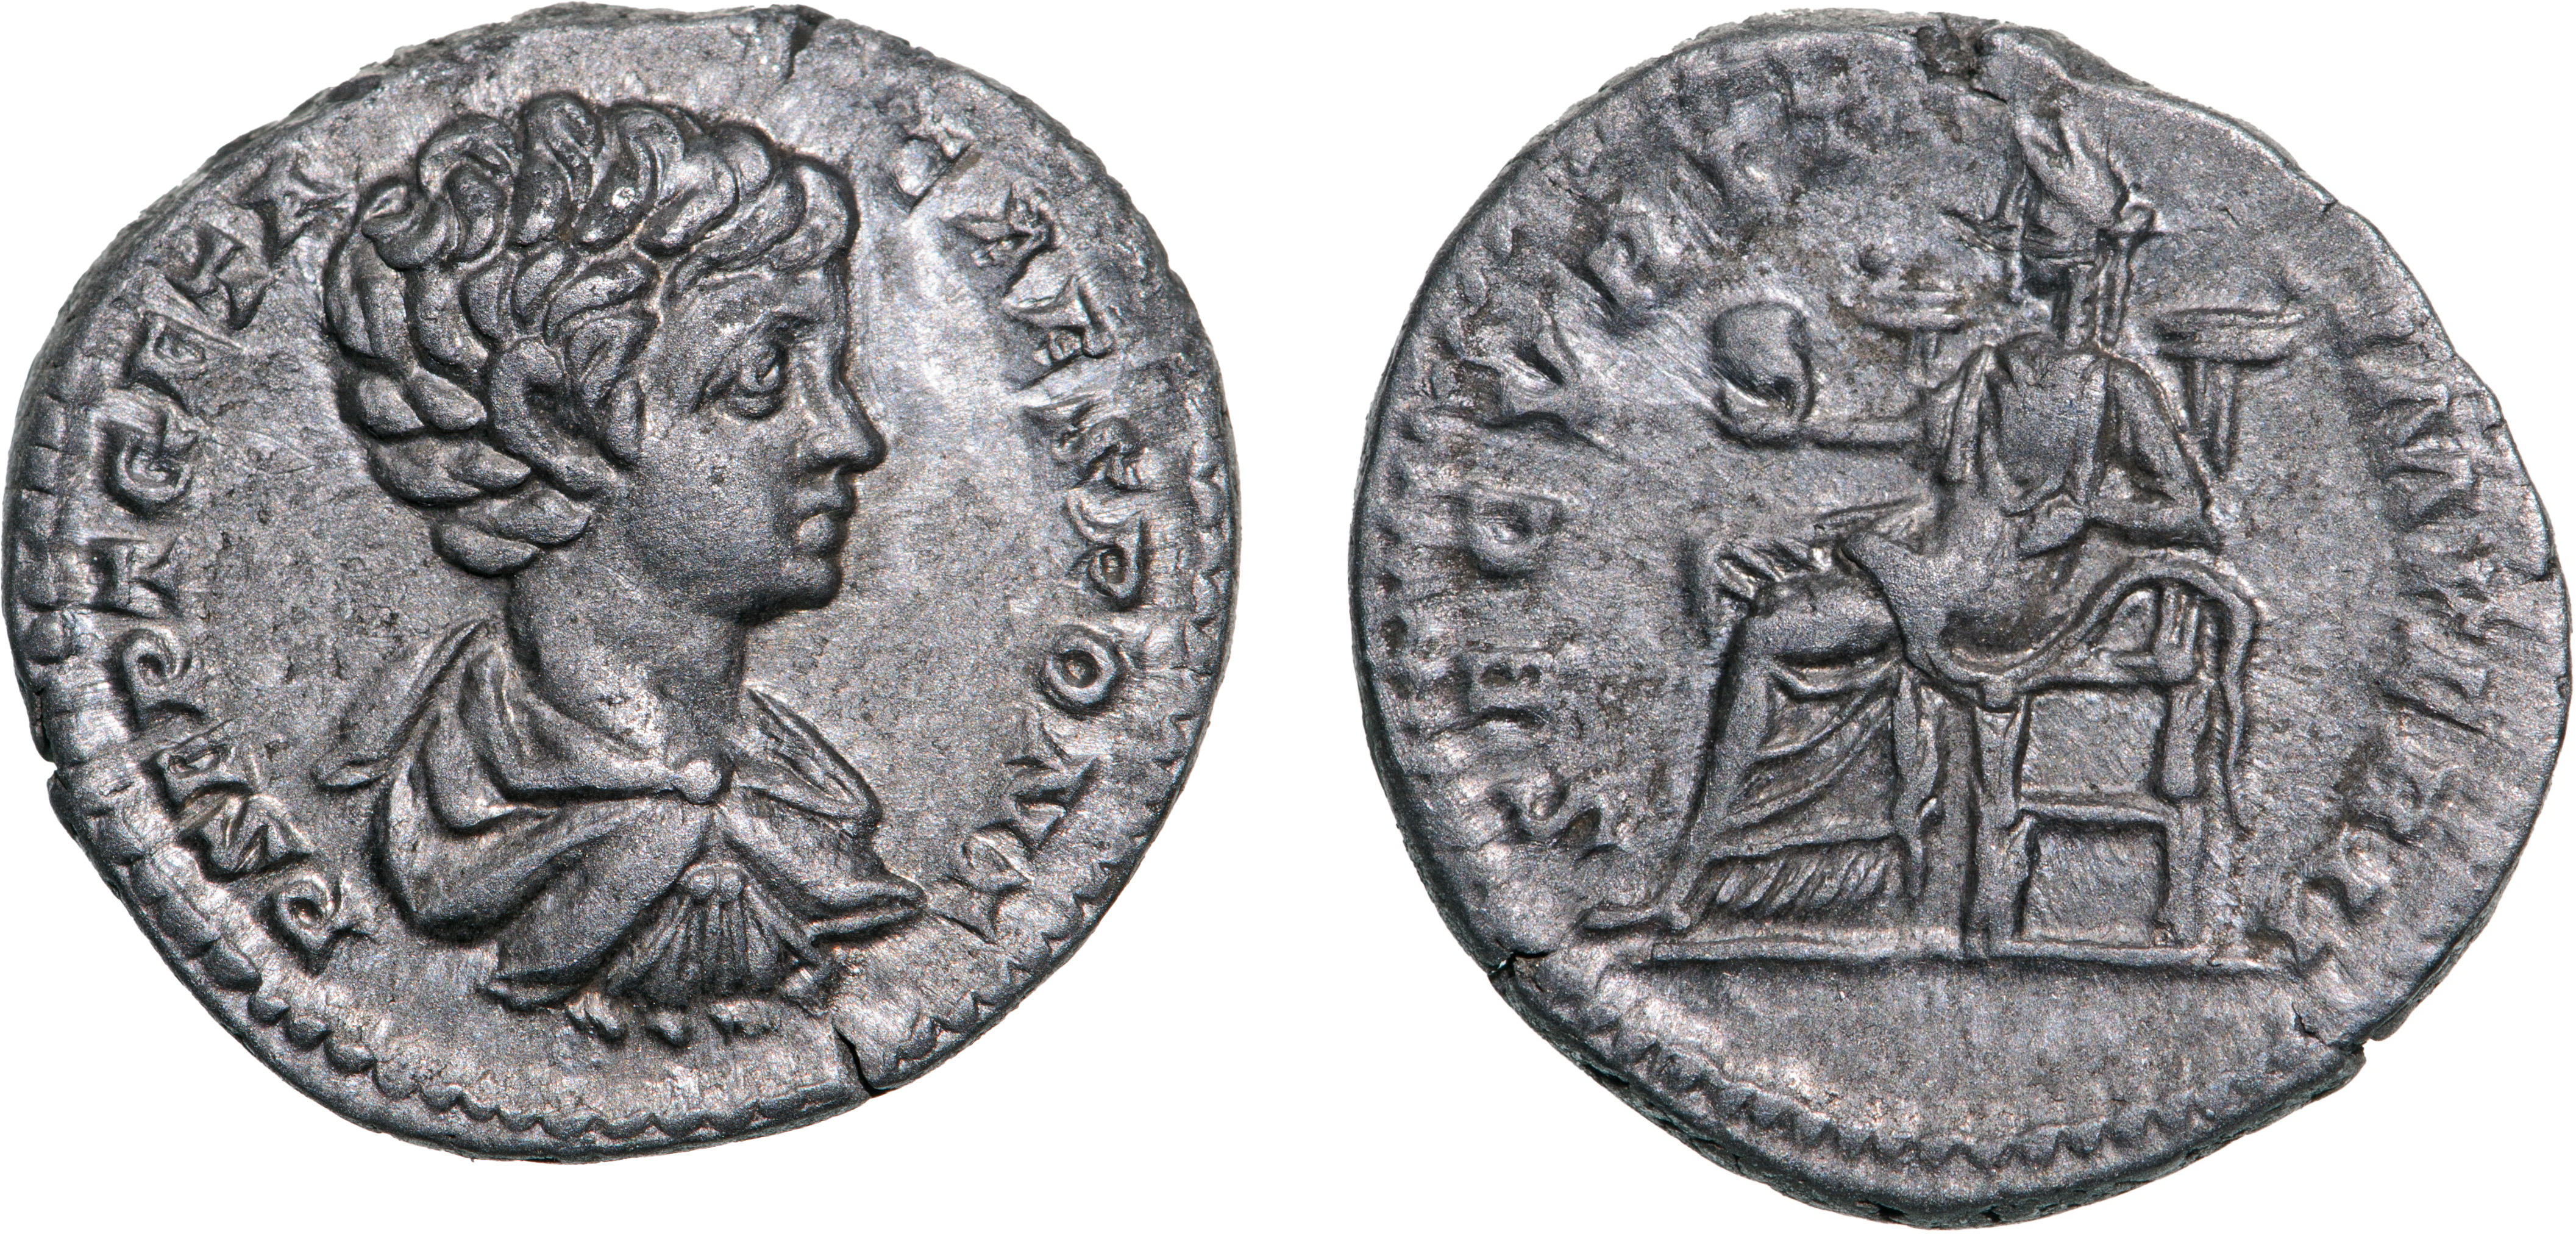 Geta (198-209 AD), AR Denarius (2.82g), struck 200-202 AD, Rome